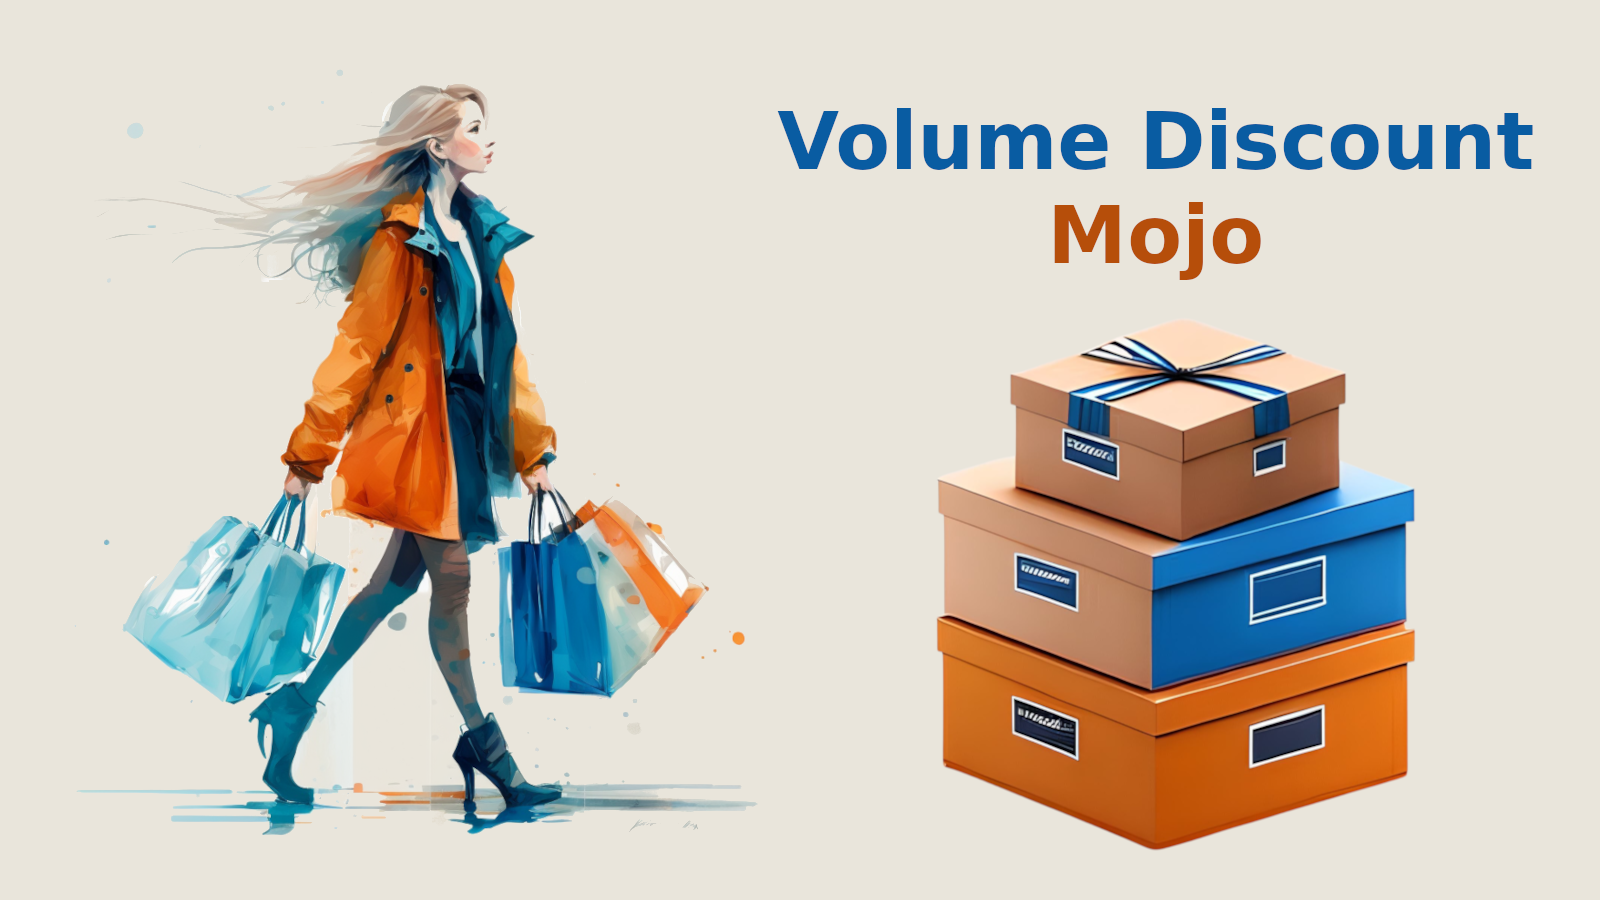 Volume Discount Mojo